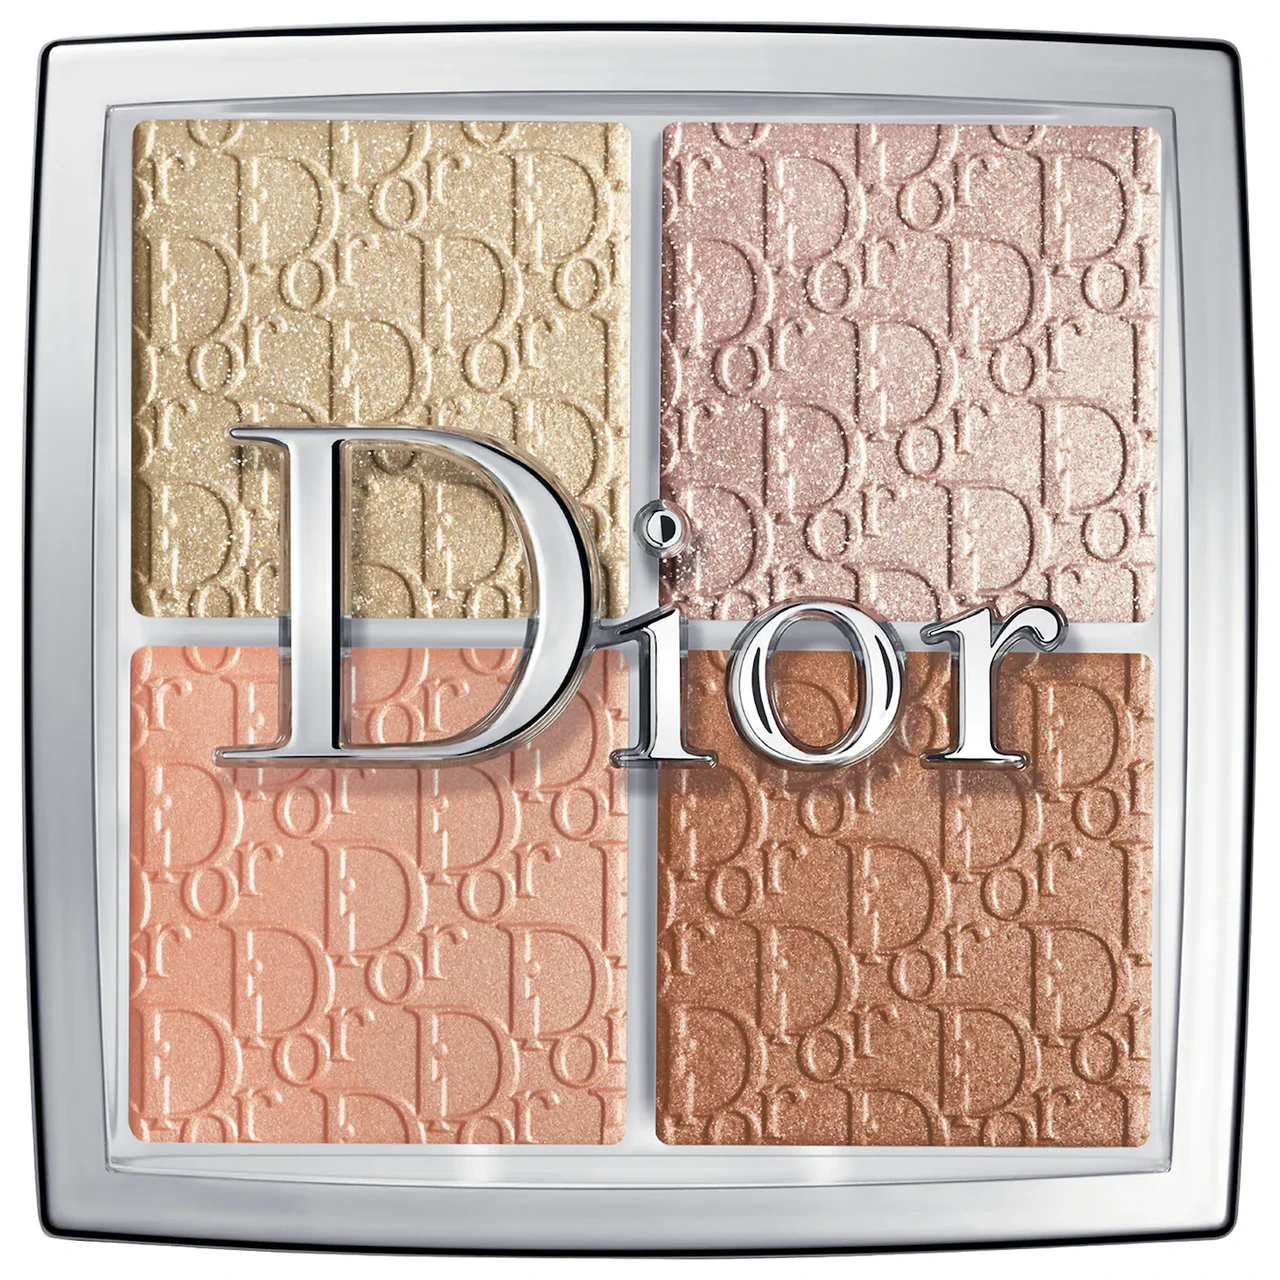 Палетка для контуринга Dior Backstage Contour Pale купить в Москве  Личные  вещи  Авито